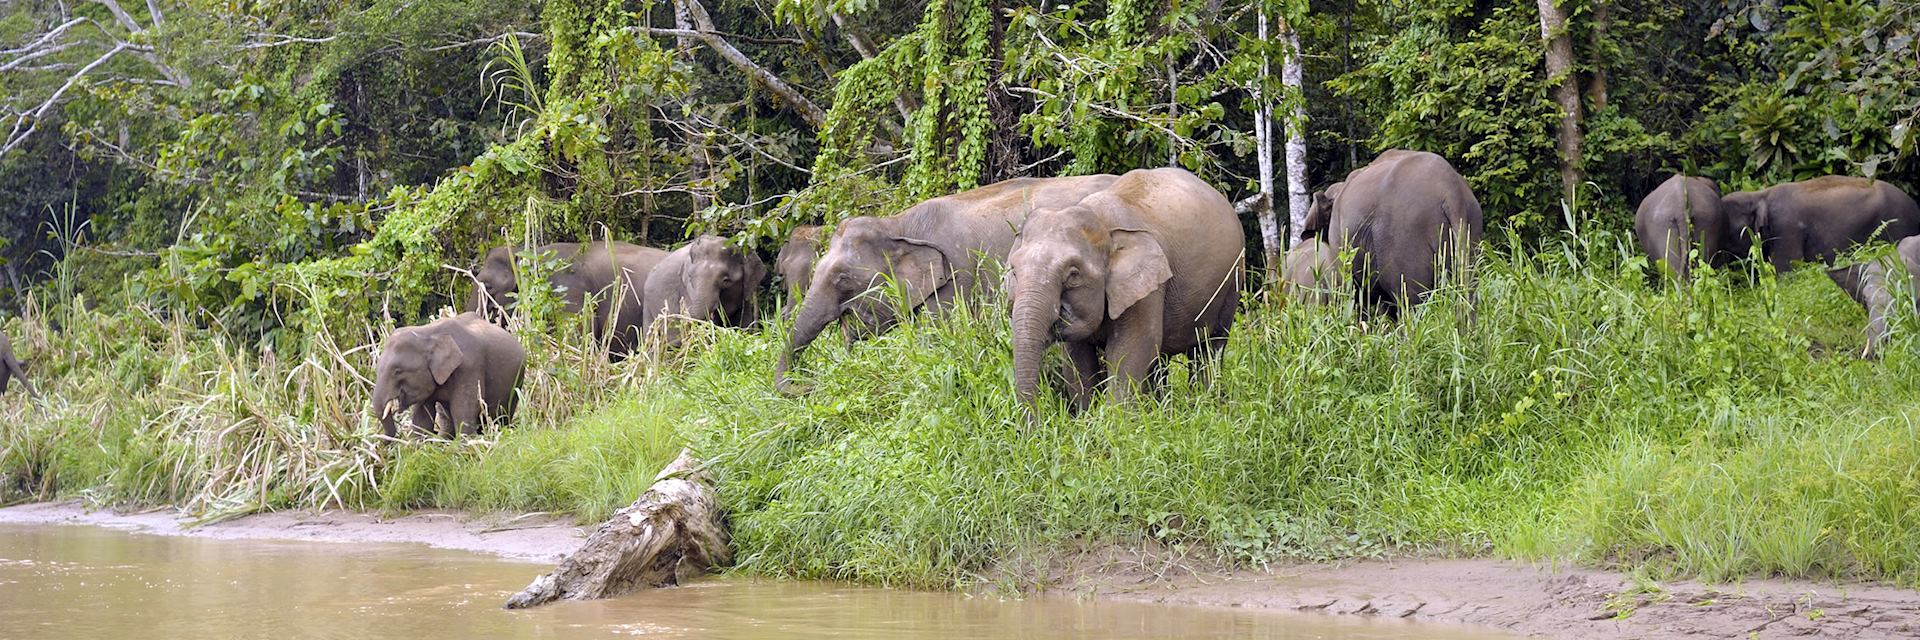 Pygmy elephants in Tabin Wildlife Reserve